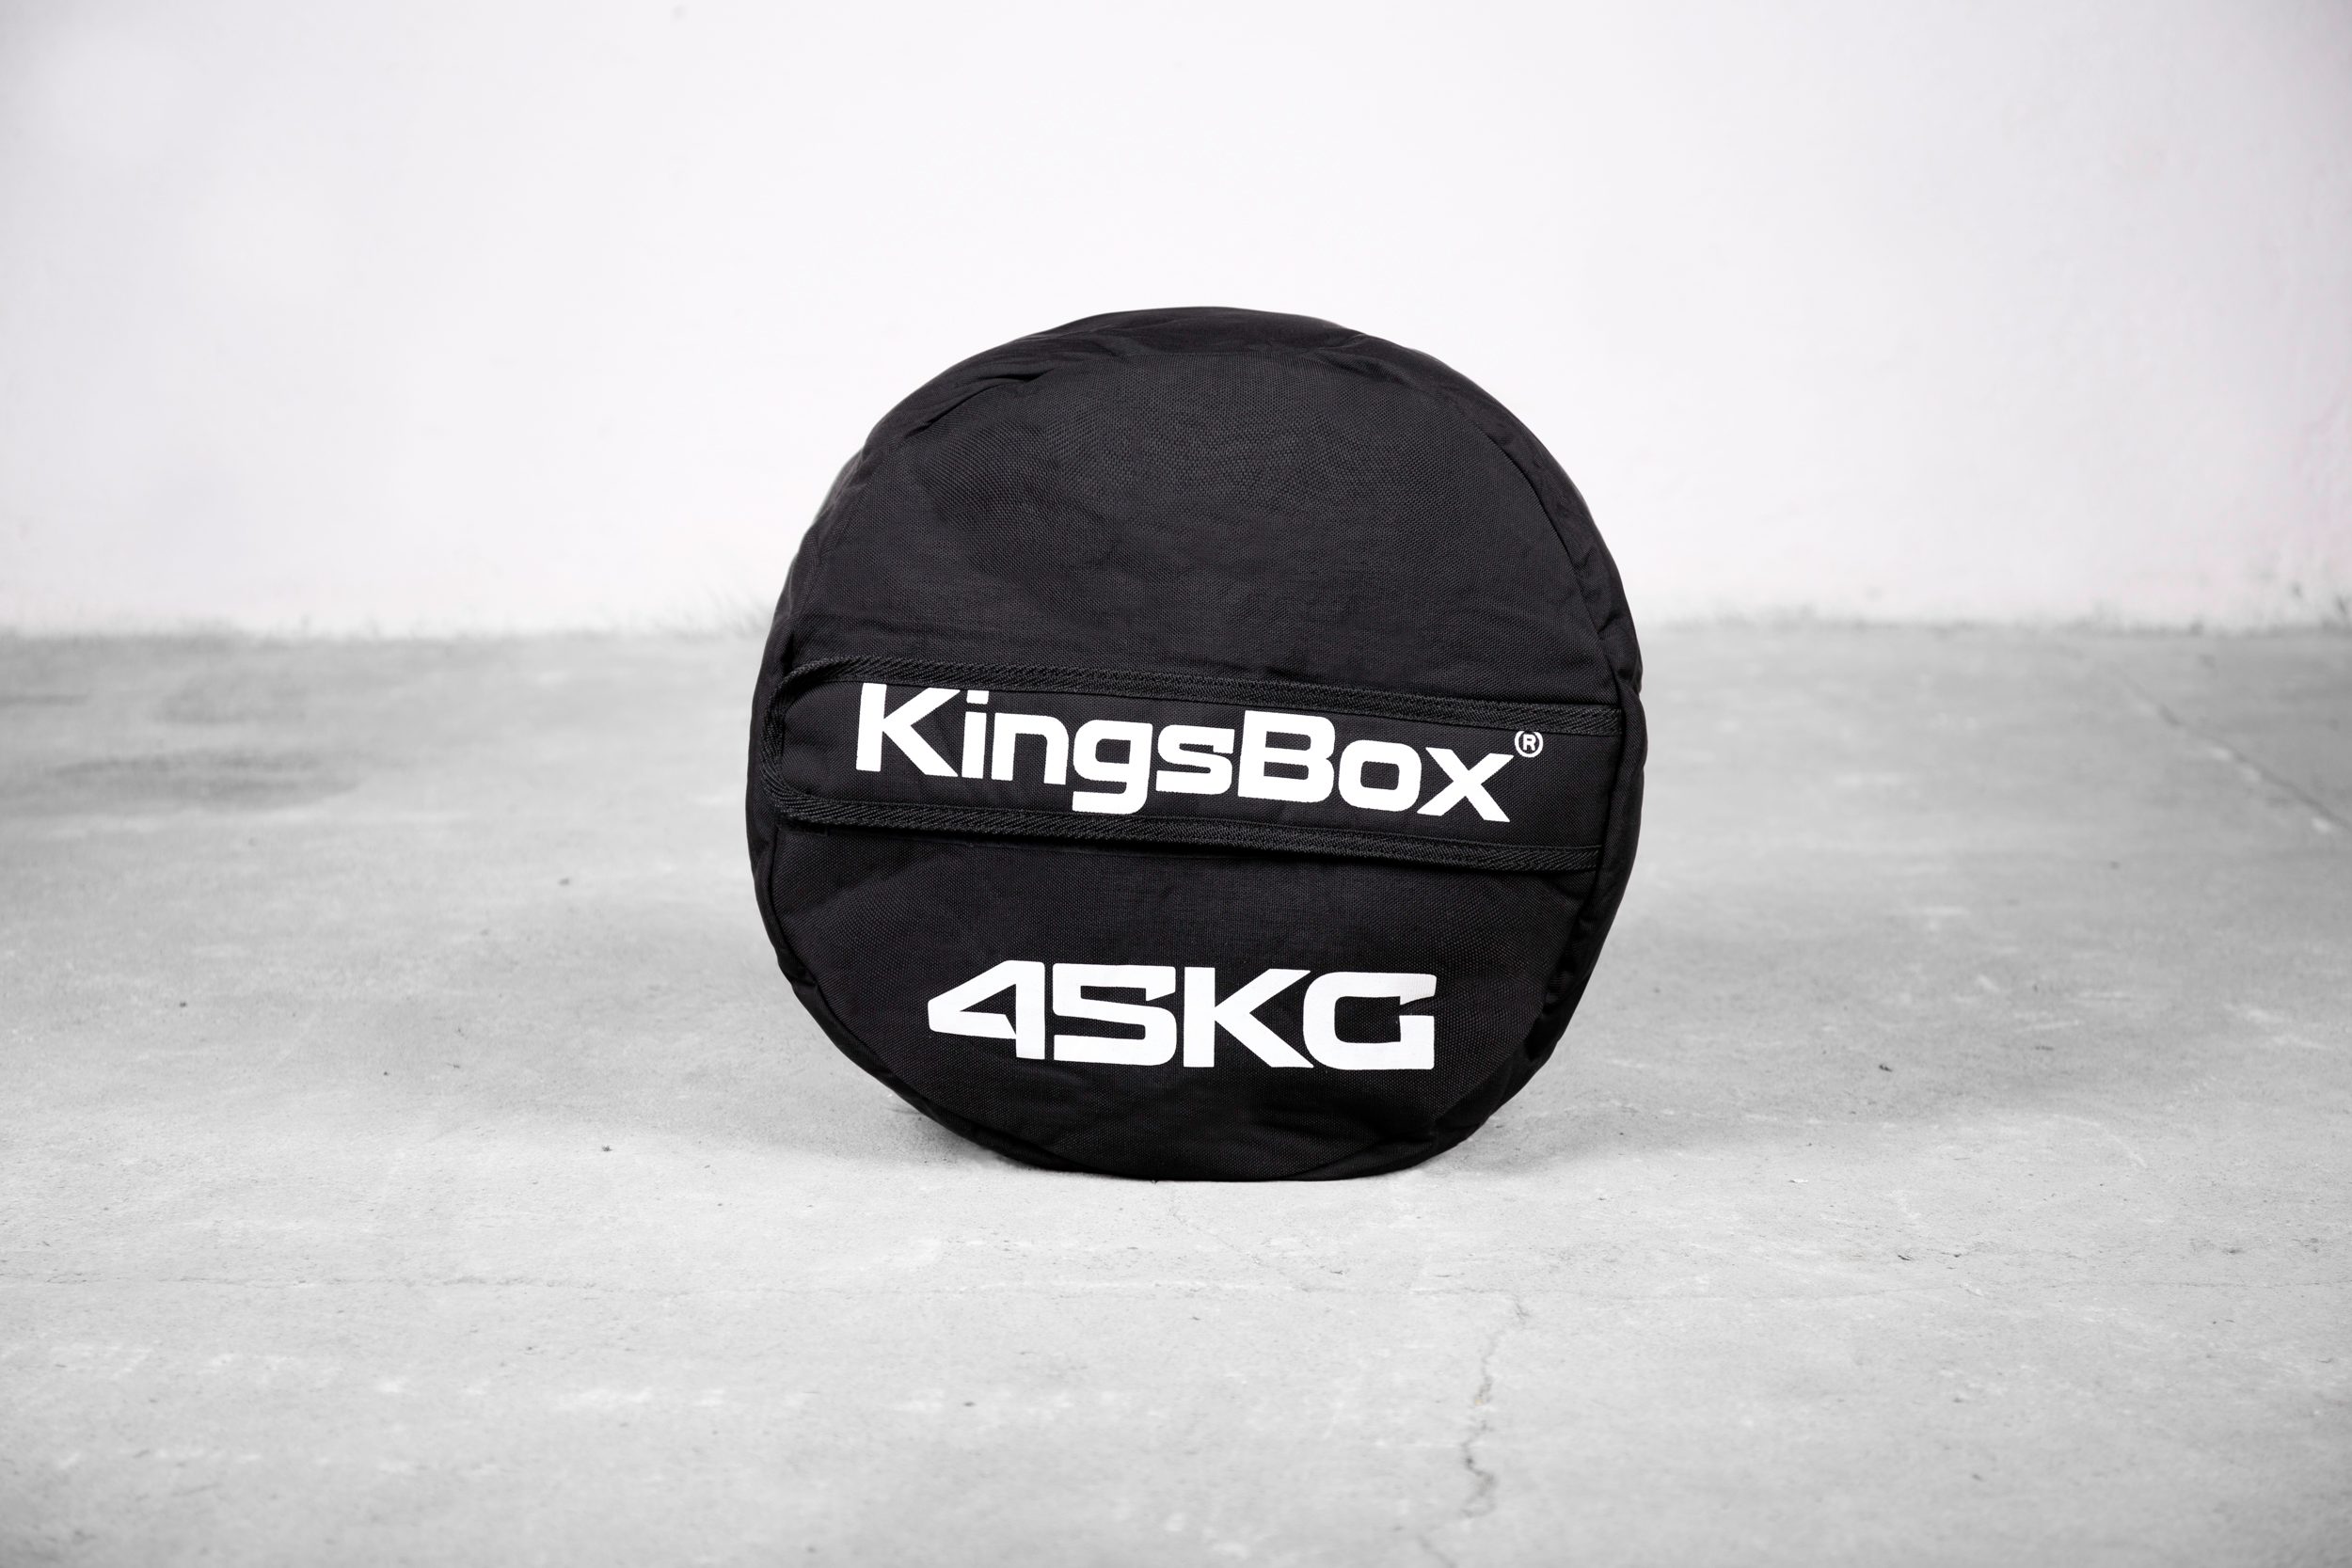 KingsBox Ultimate Sand Bag 45kg